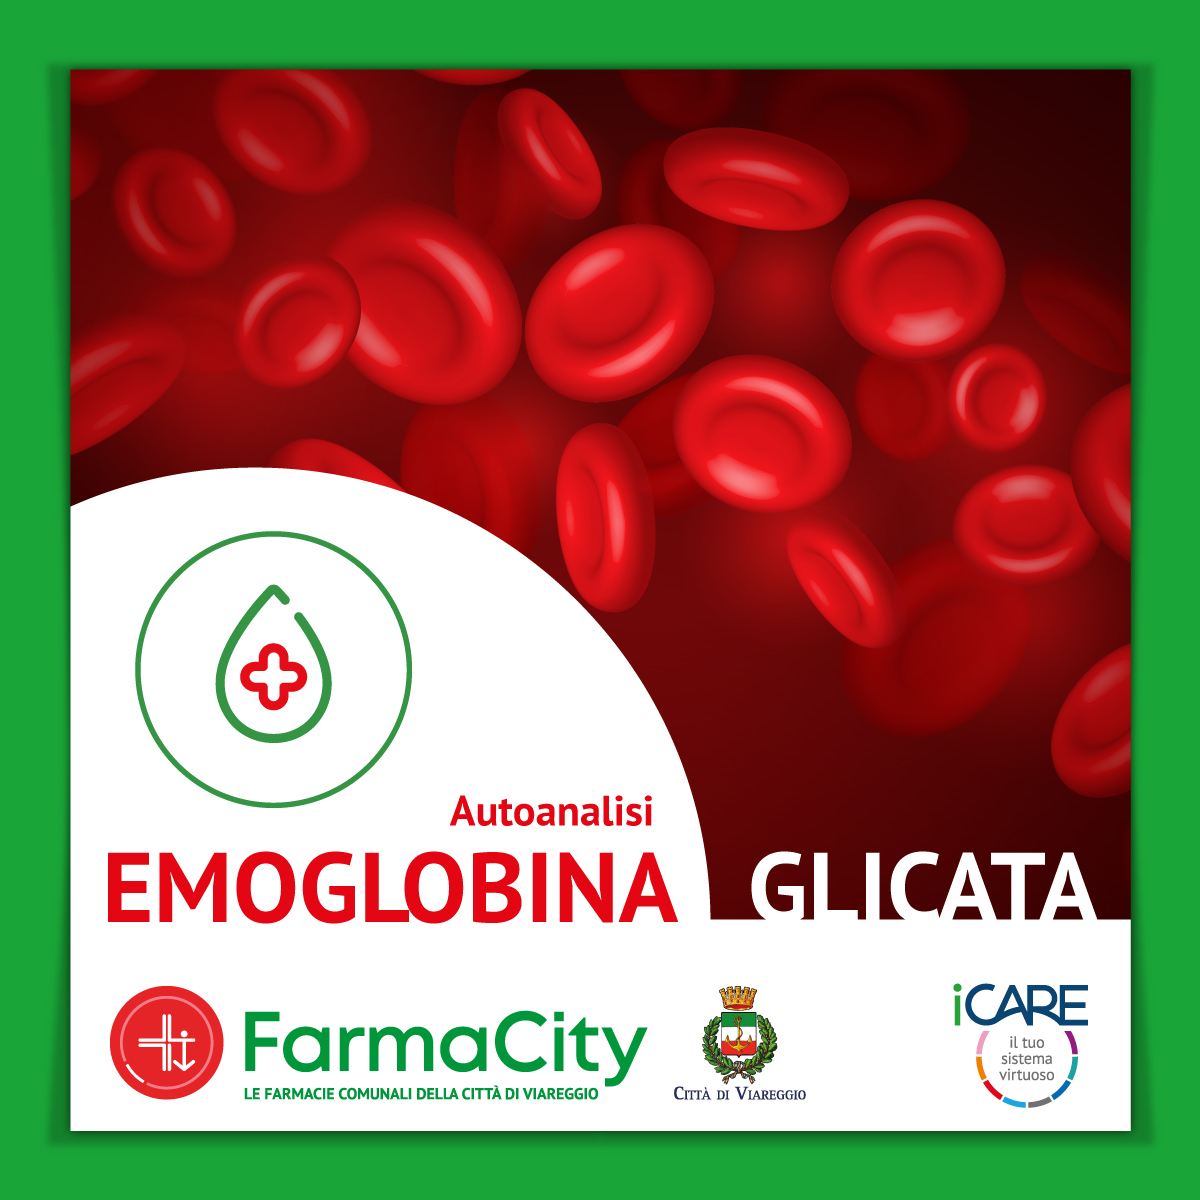 Arriva in FarmaCity il test dell’Emoglobina Glicata